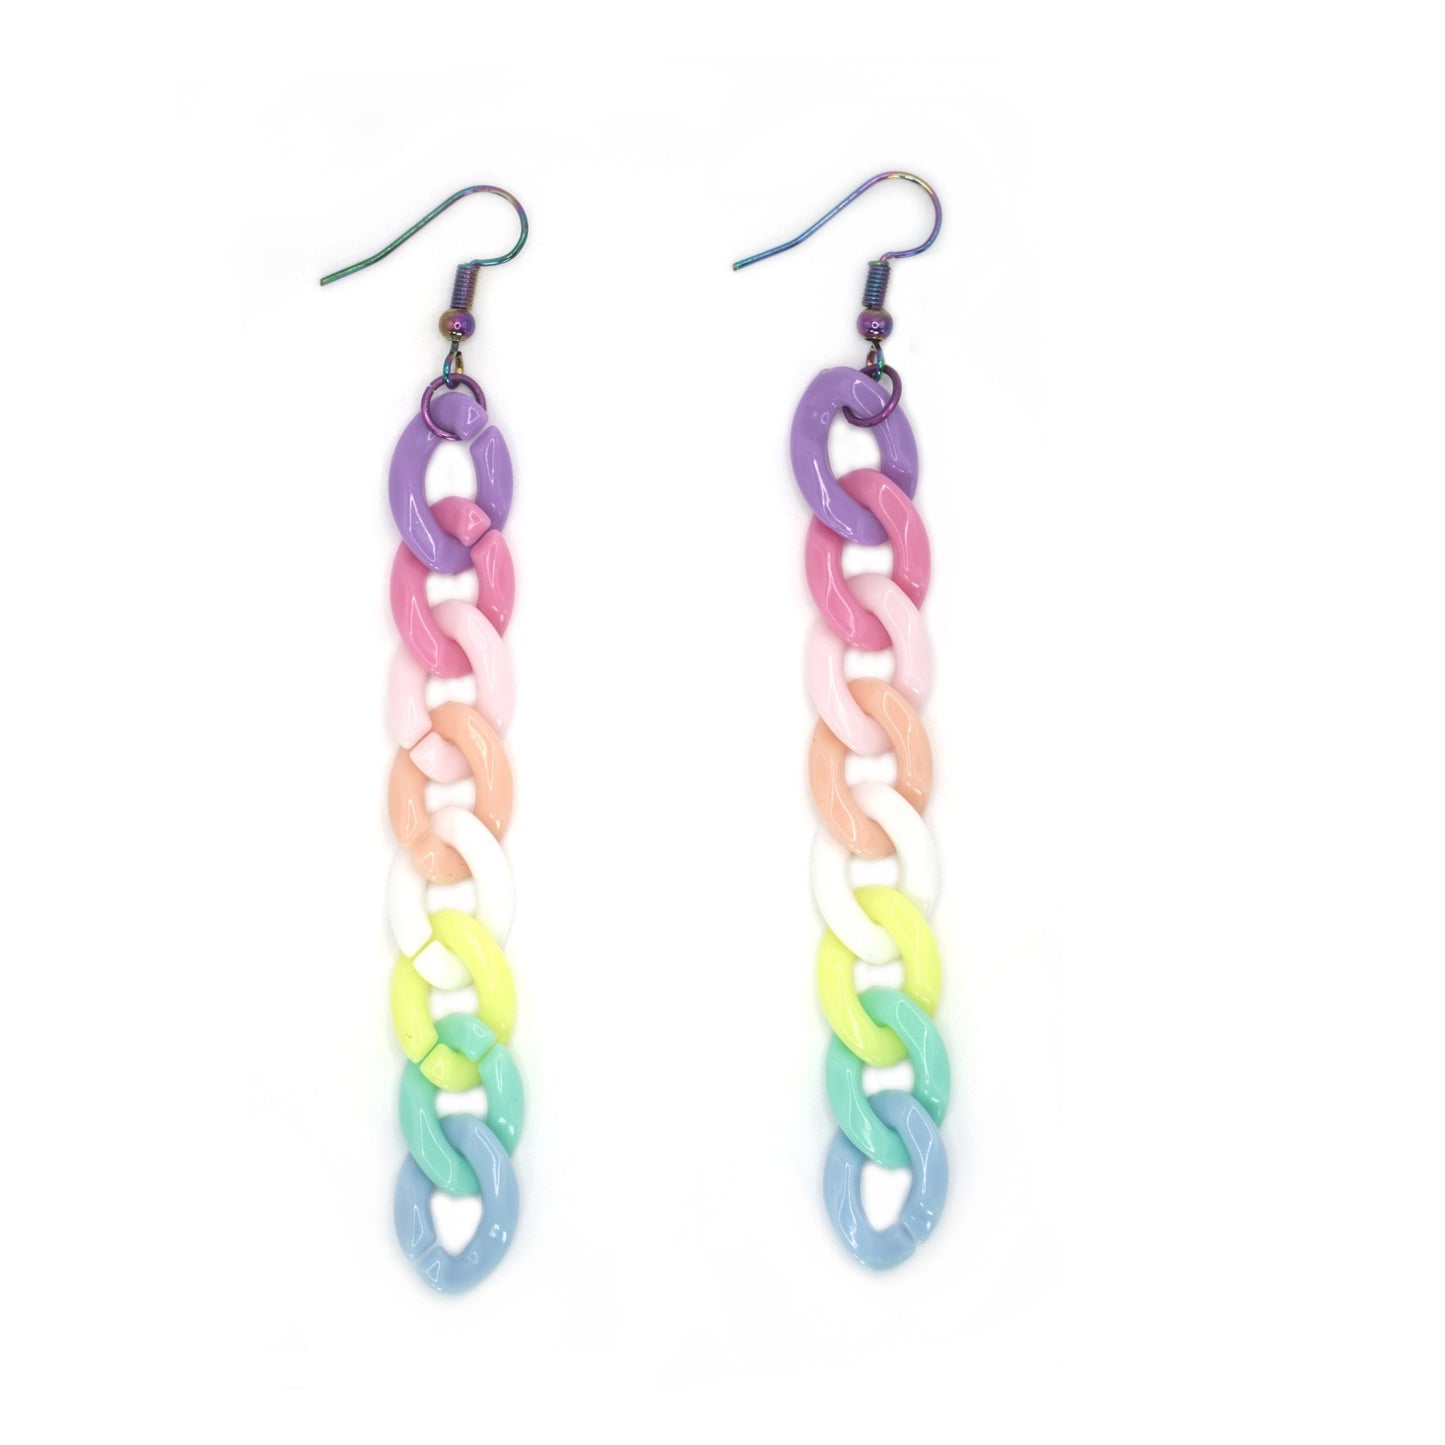 Rainbowcore Pastel Earrings, Chain Drop Earrings, LGBTQ Pride Jewelry - Dekowaii Jewelry Company